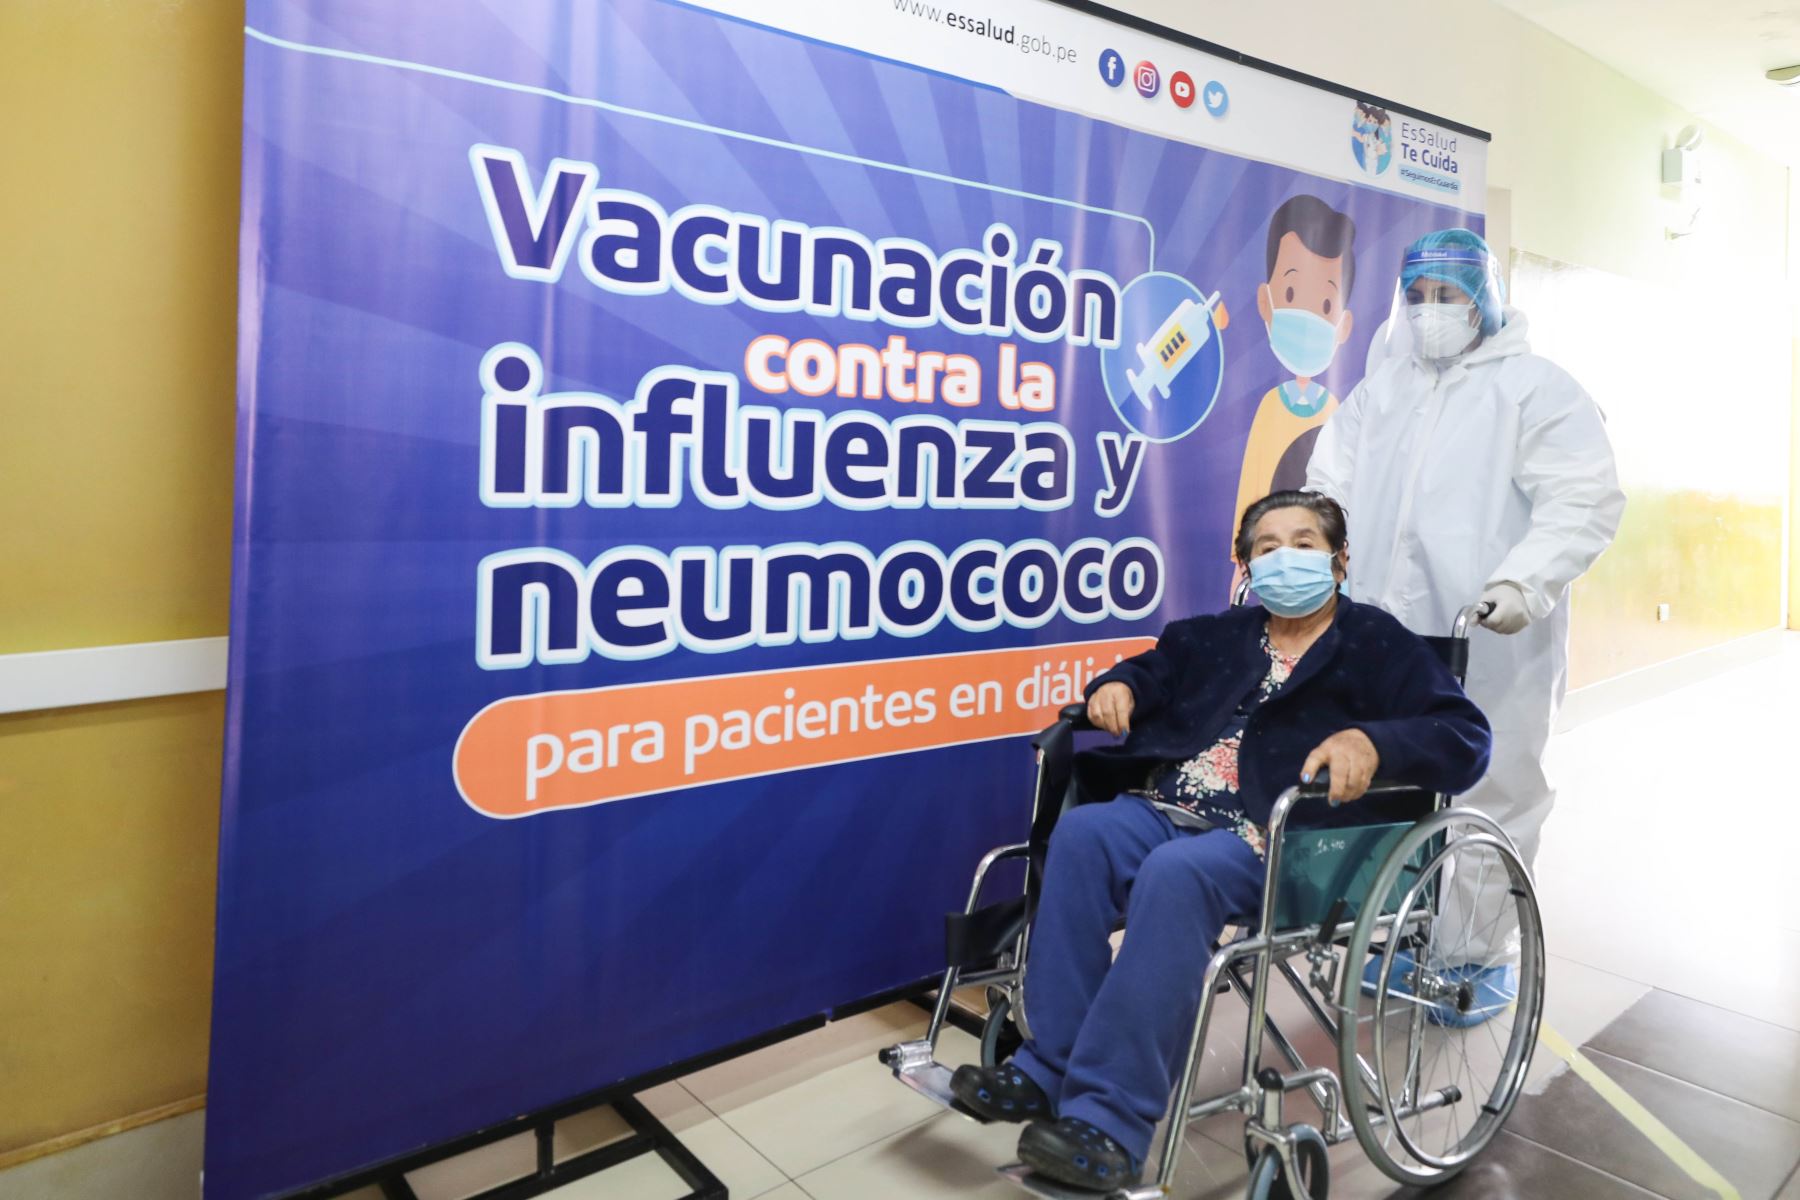 Vacunarán contra influenza y neumococo a 4,000 pacientes de diálisis de Lima y Callao